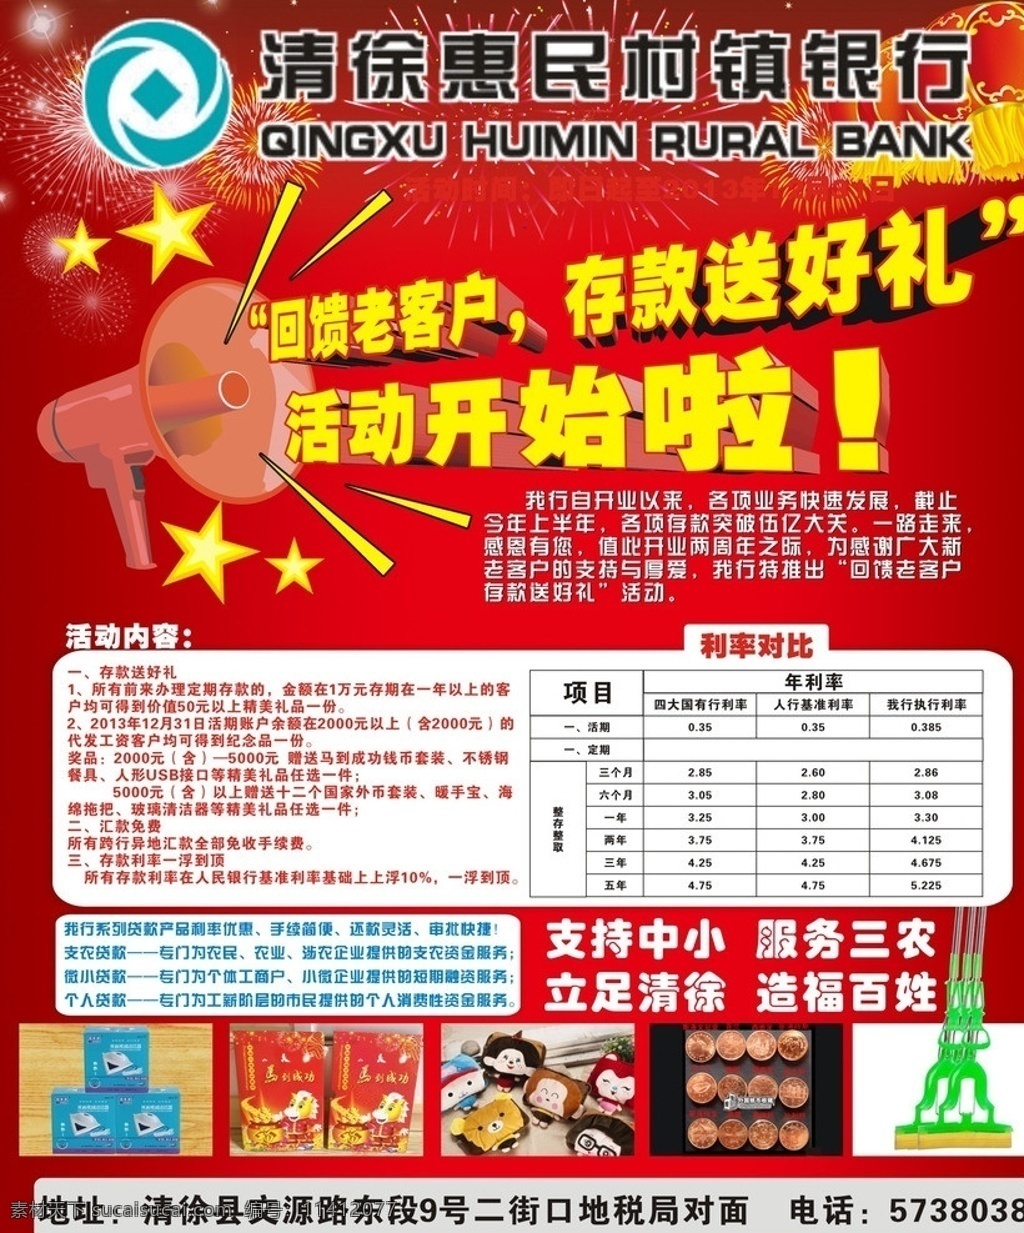 清徐 惠民 村镇 银行 活动 回馈客户 存款送礼 利率对比 矢量